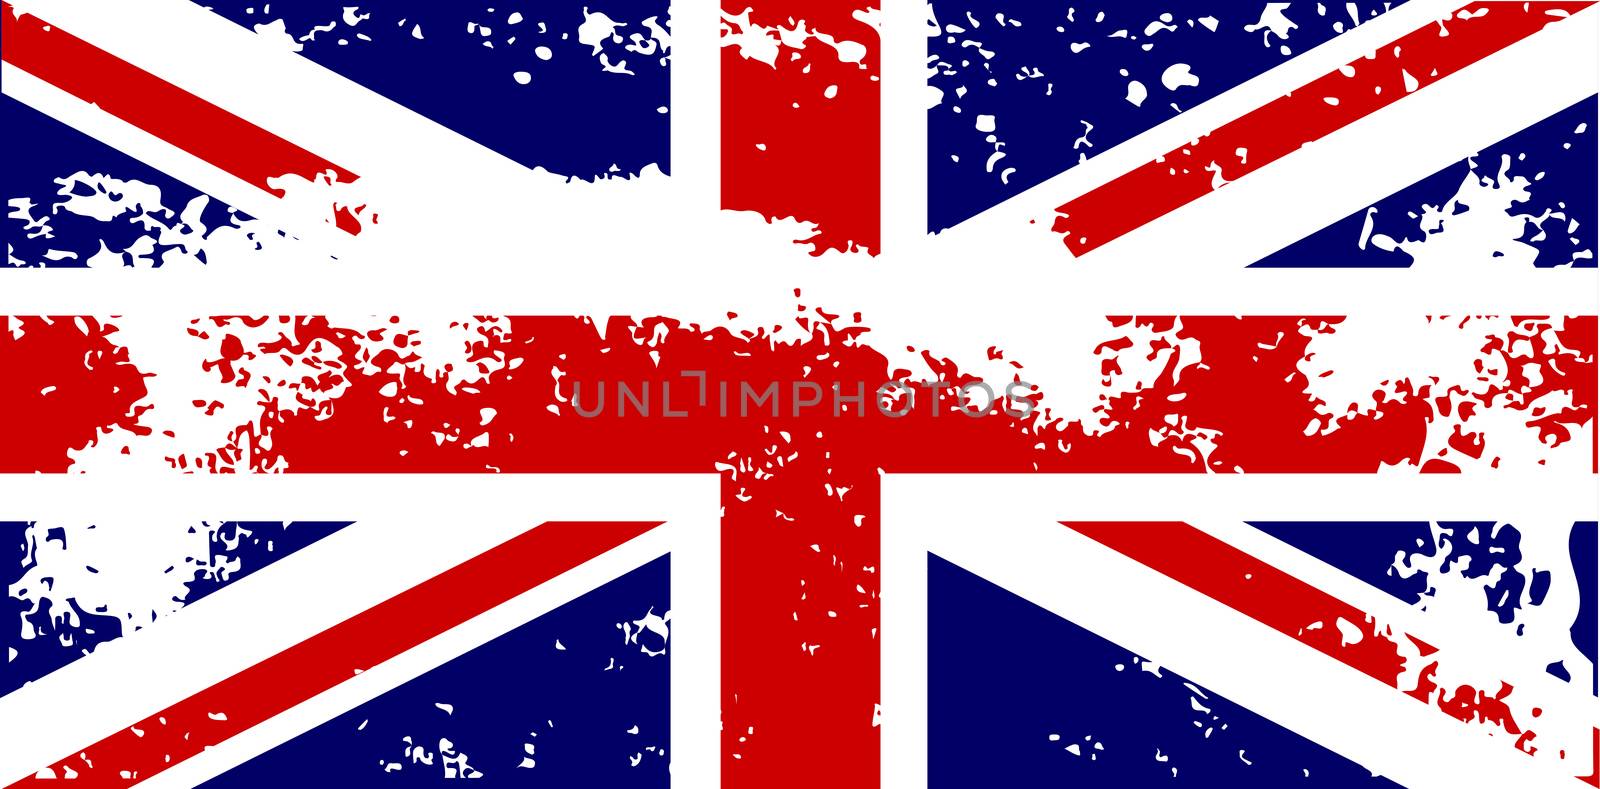 Union Jack Flag Grunge by Bigalbaloo